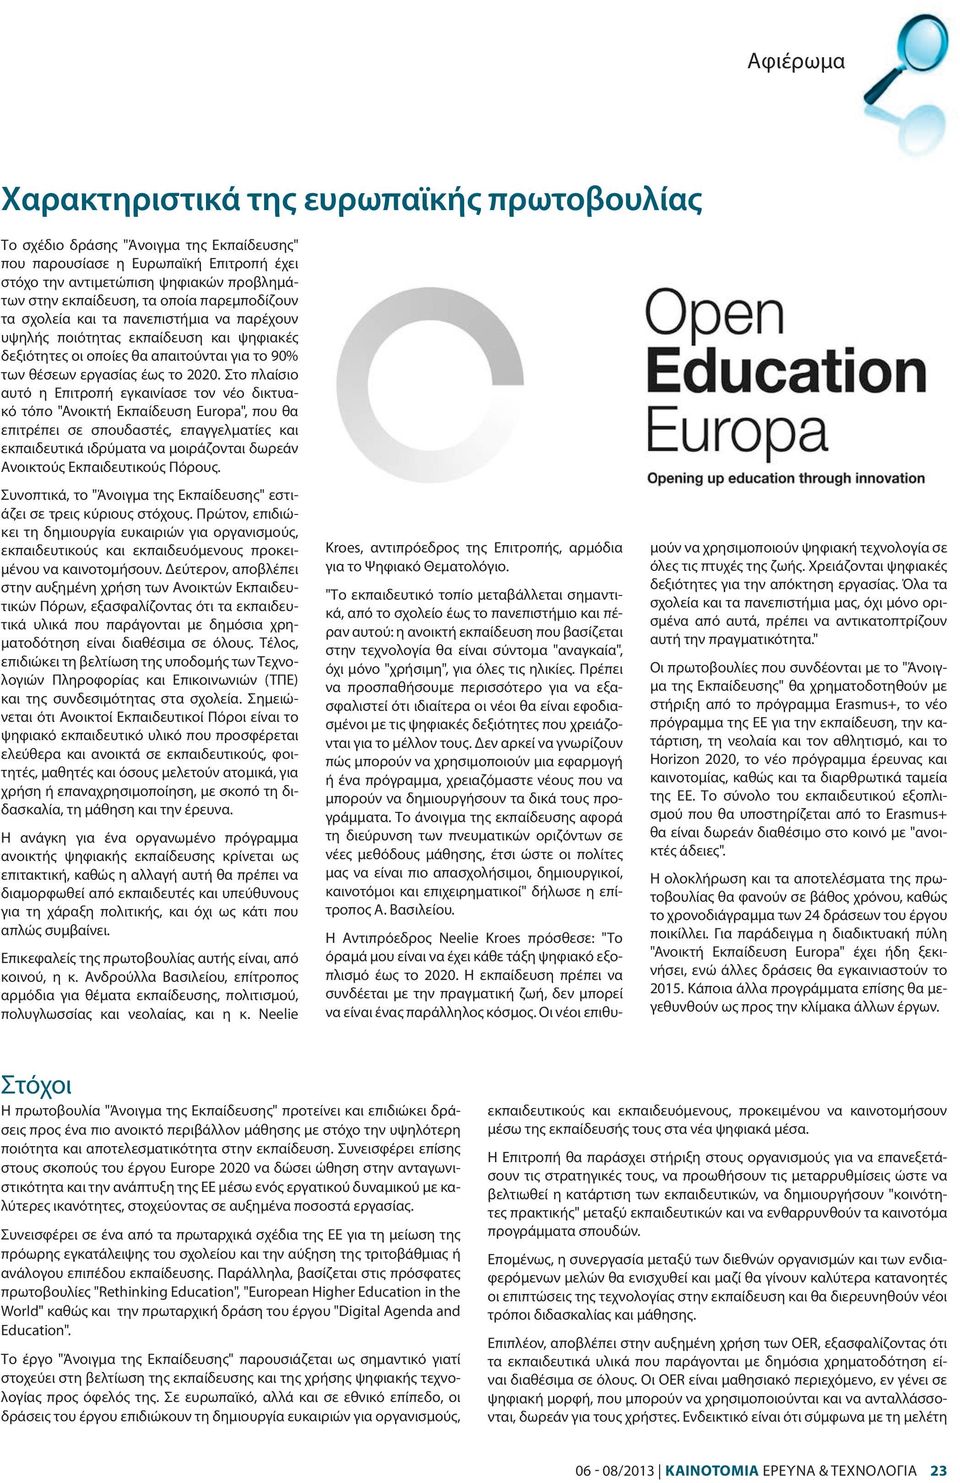 Στο πλαίσιο αυτό η Επιτροπή εγκαινίασε τον νέο δικτυακό τόπο "Ανοικτή Εκπαίδευση Europa", που θα επιτρέπει σε σπουδαστές, επαγγελματίες και εκπαιδευτικά ιδρύματα να μοιράζονται δωρεάν Ανοικτούς